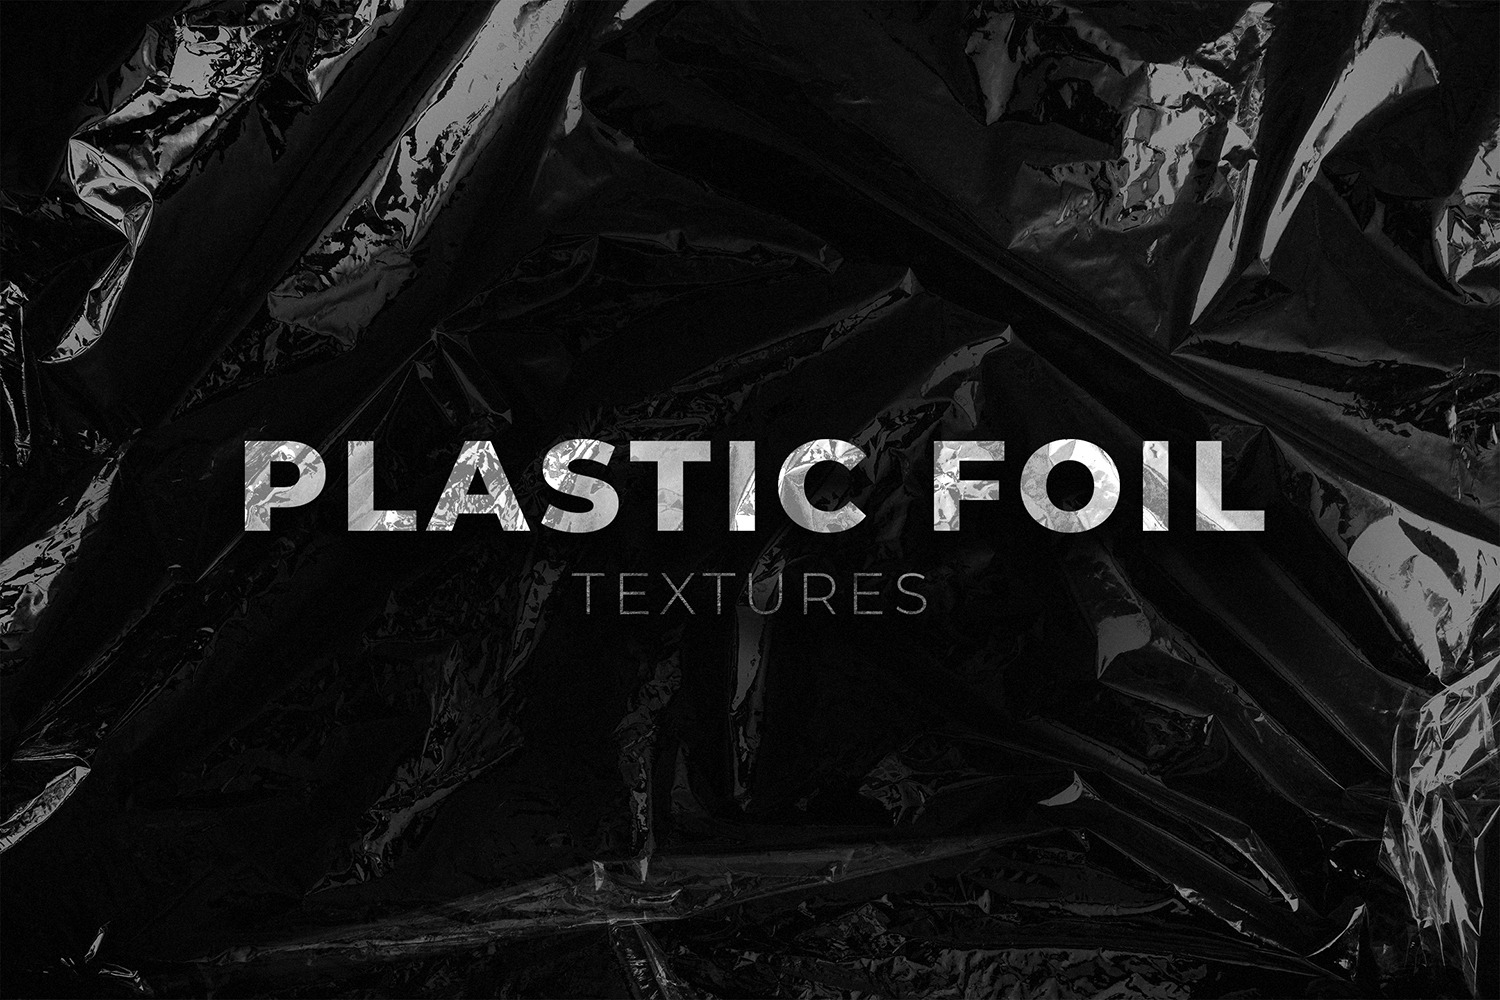 Plastic Foil Texture Pack